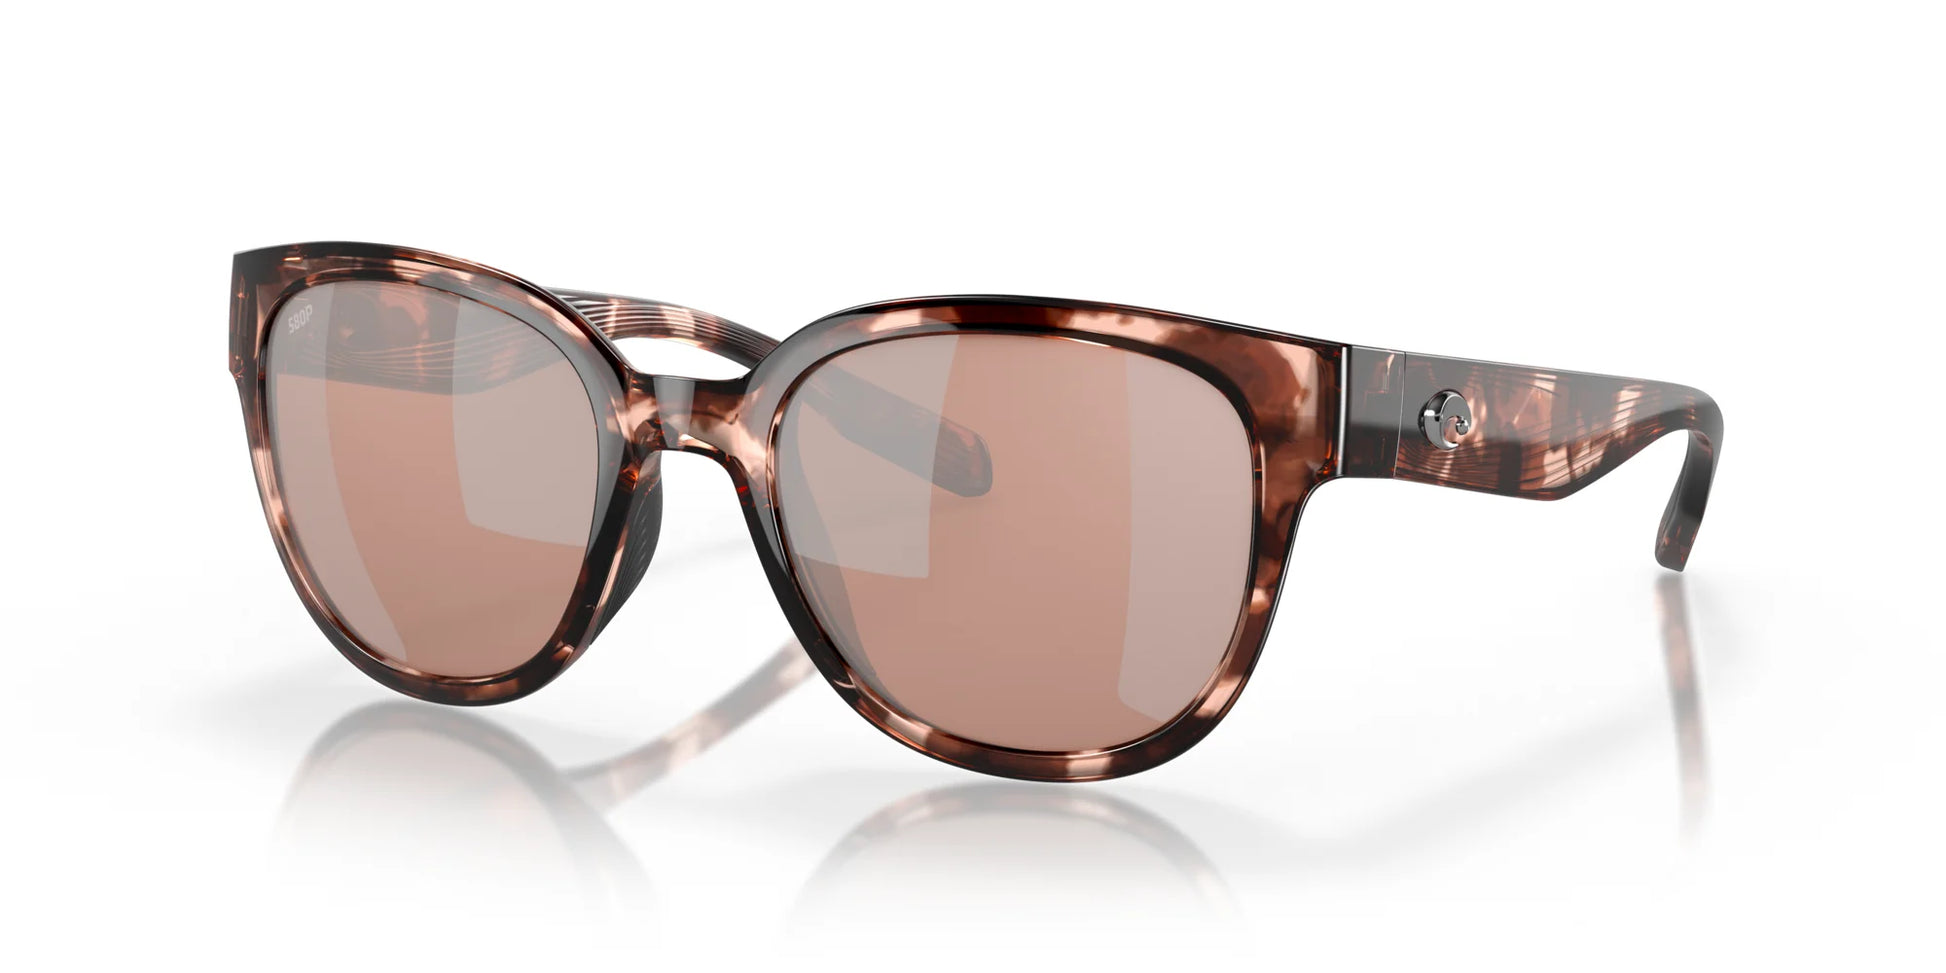 Costa SALINA 6S9051 Sunglasses Coral Tortoise / Copper Silver Mirror